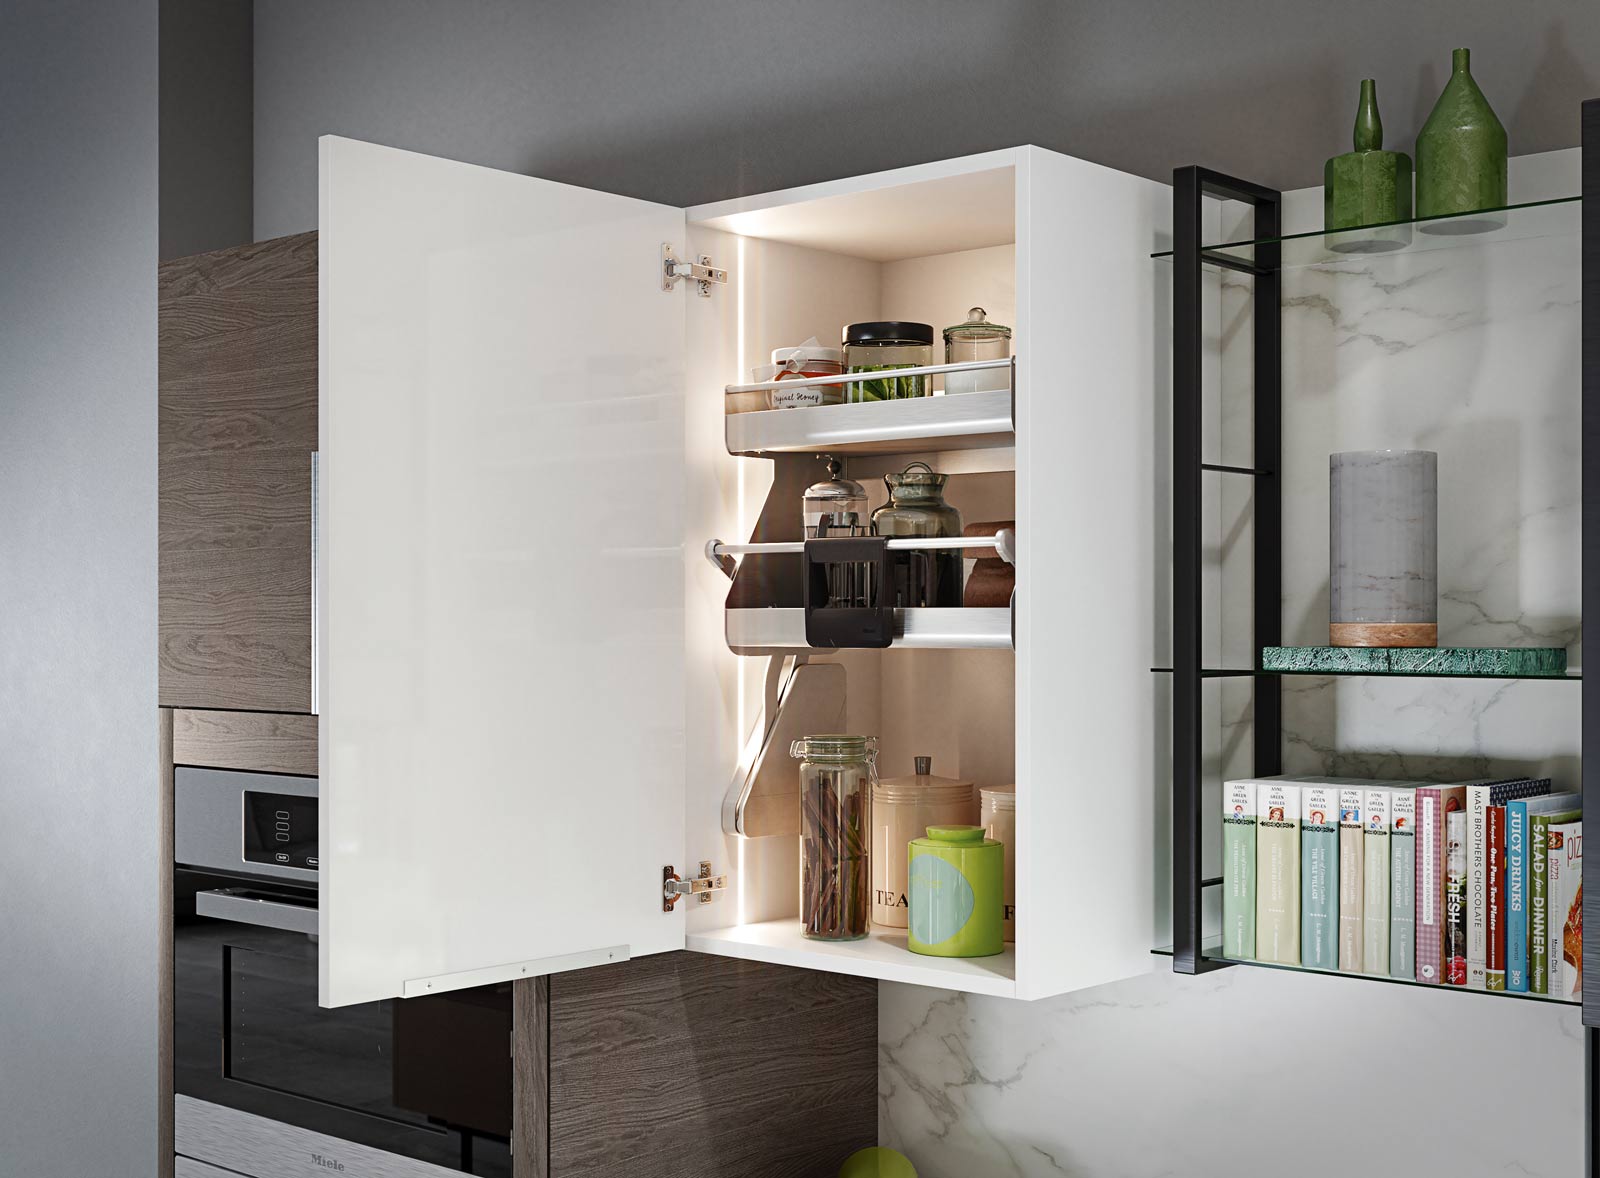  Smart Ideas — Organizing Kitchen Storage